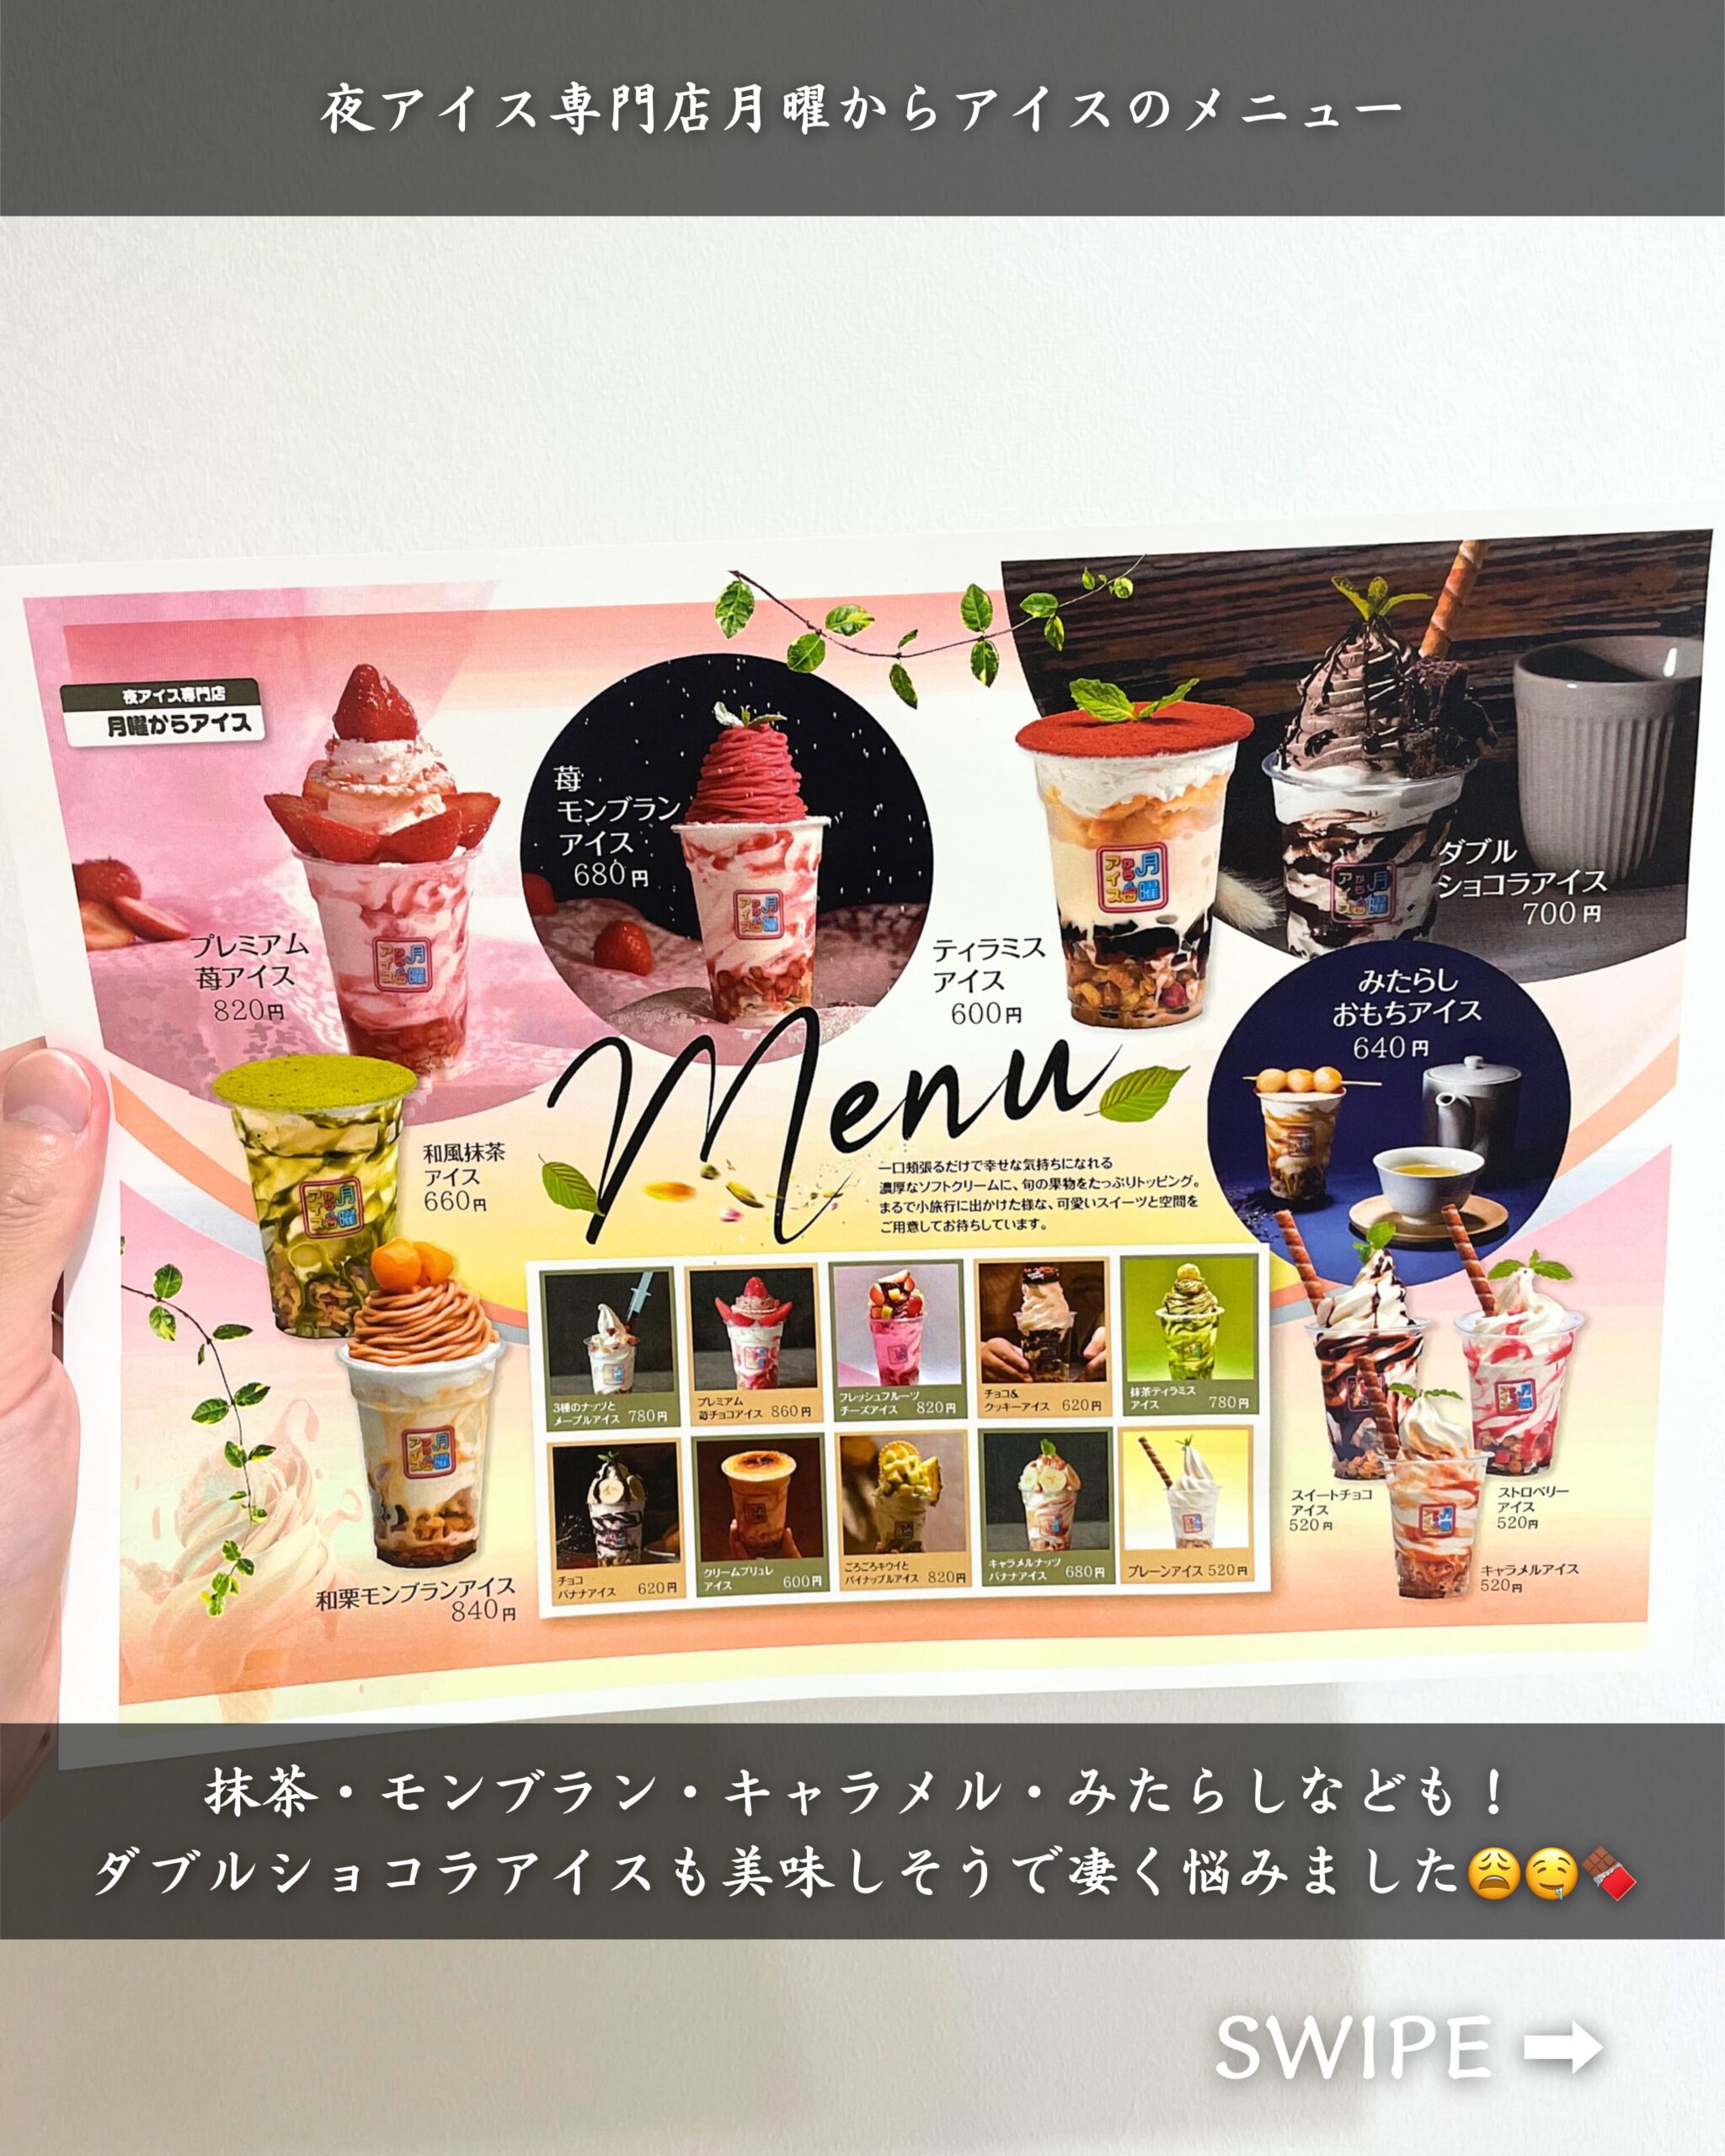 青森県弘前市にある「夜アイス専門店月曜からアイス」の「メニュー」